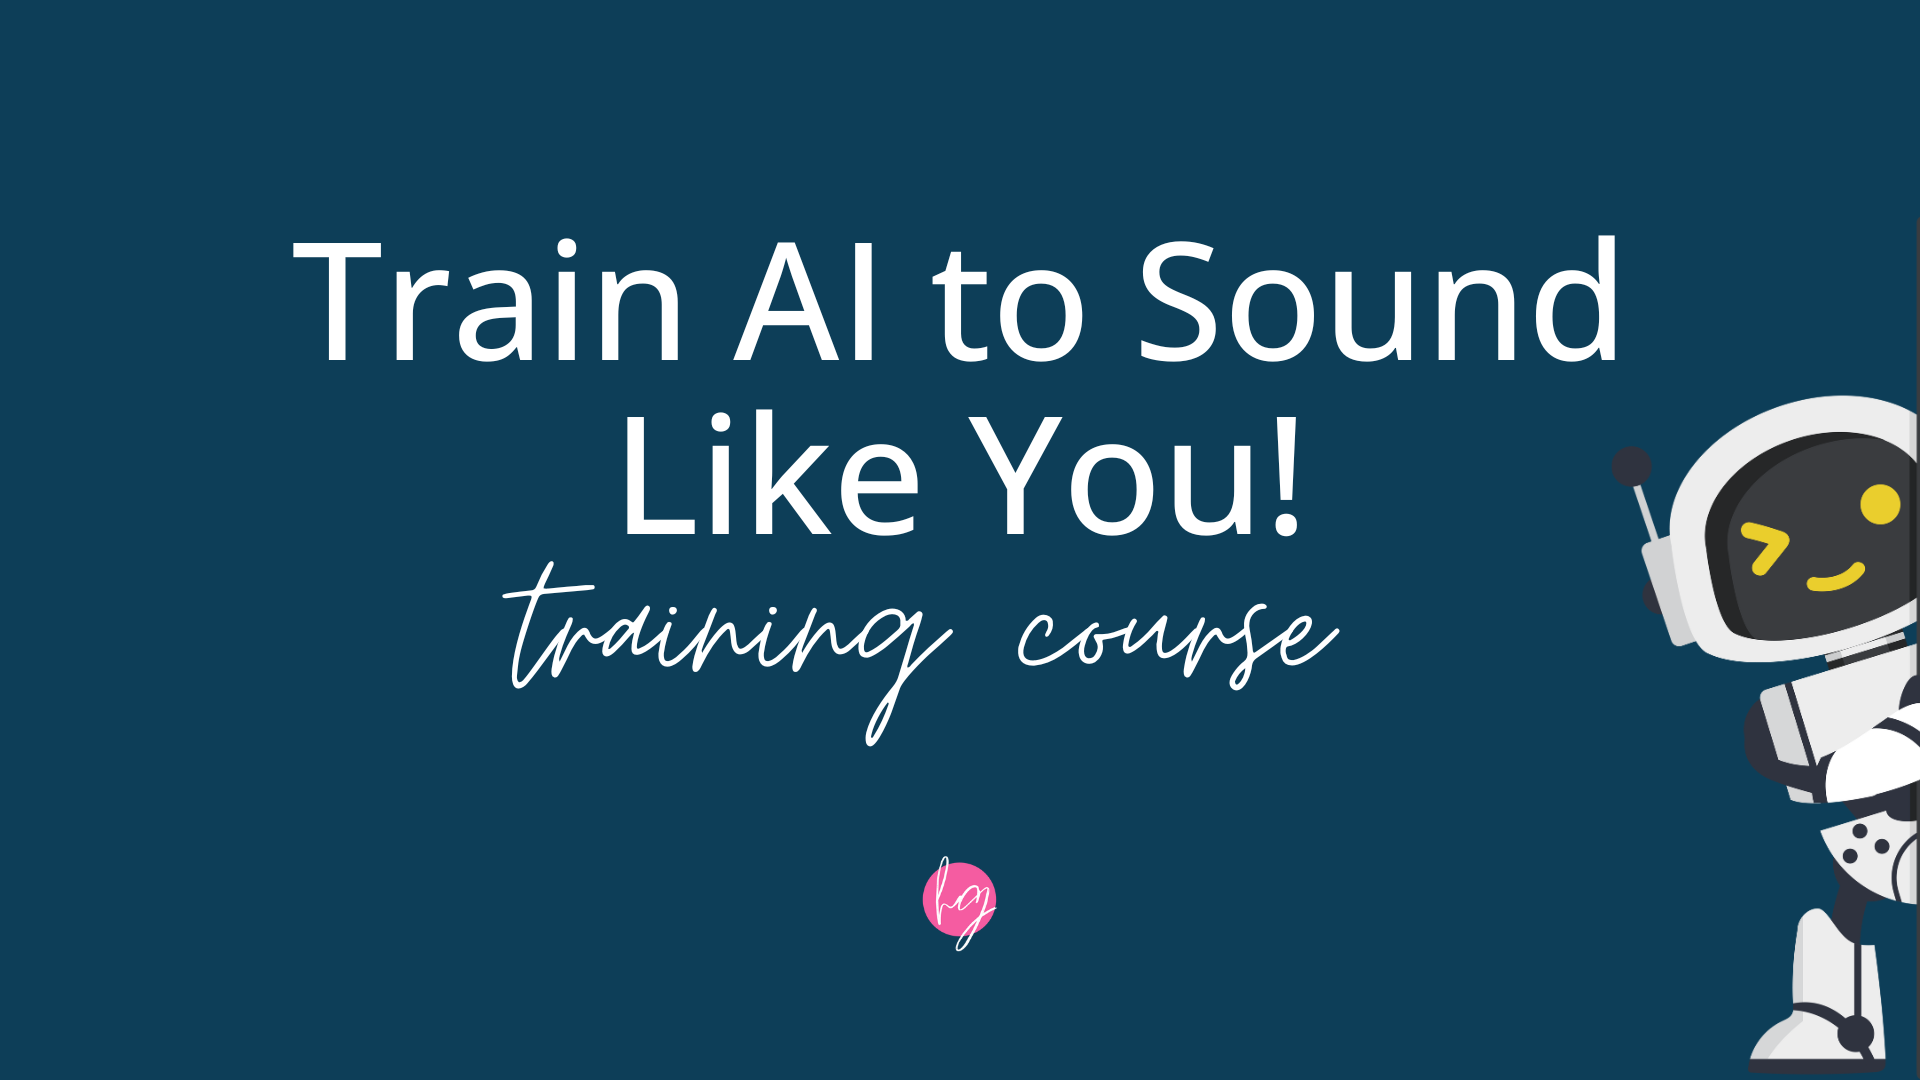 Train AI to Sound Like You